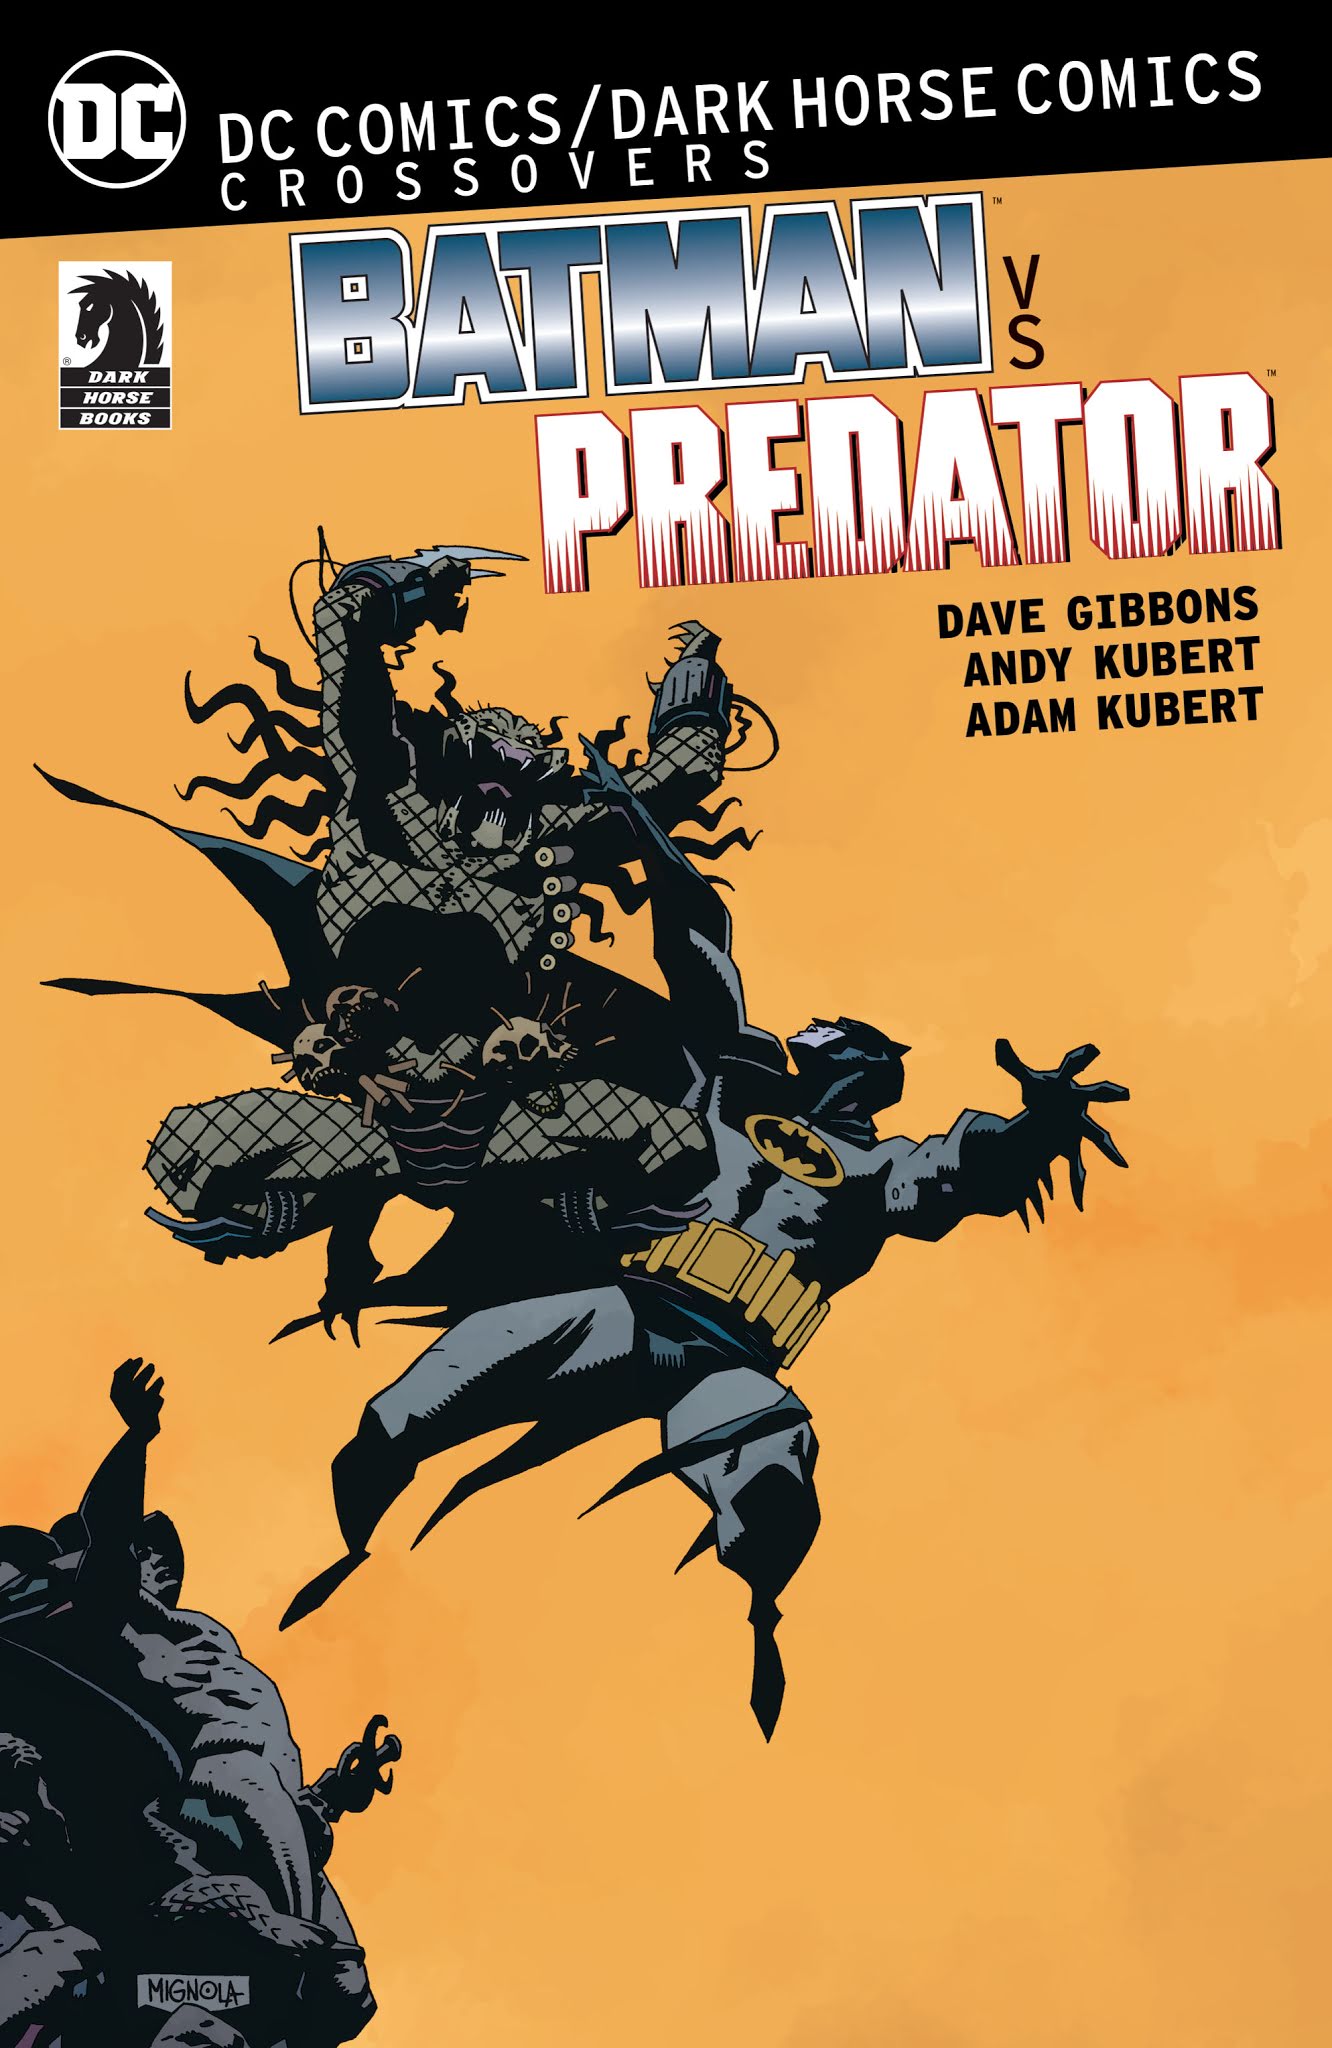 Read online DC Comics/Dark Horse Comics: Batman vs. Predator comic -  Issue # TPB (Part 1) - 1